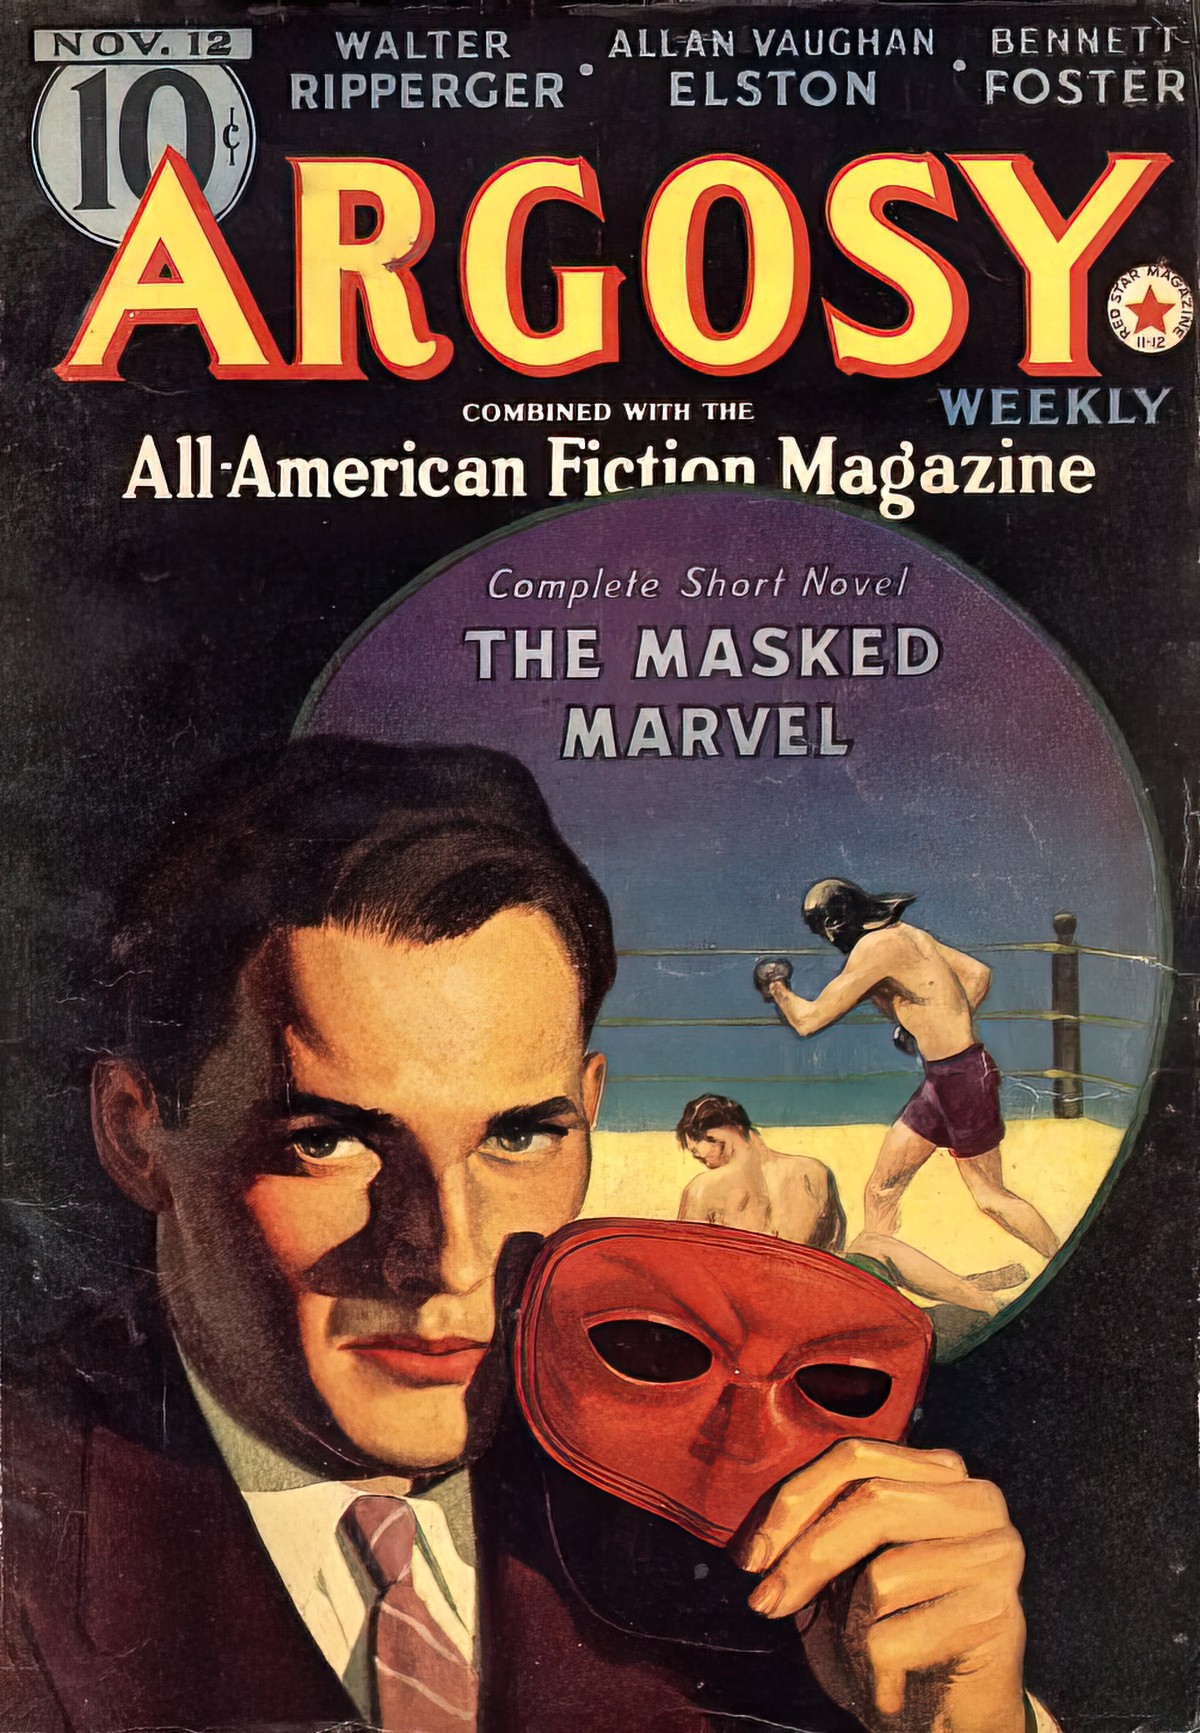 Argosy Part 4 Argosy Weekly Nov 12 1938